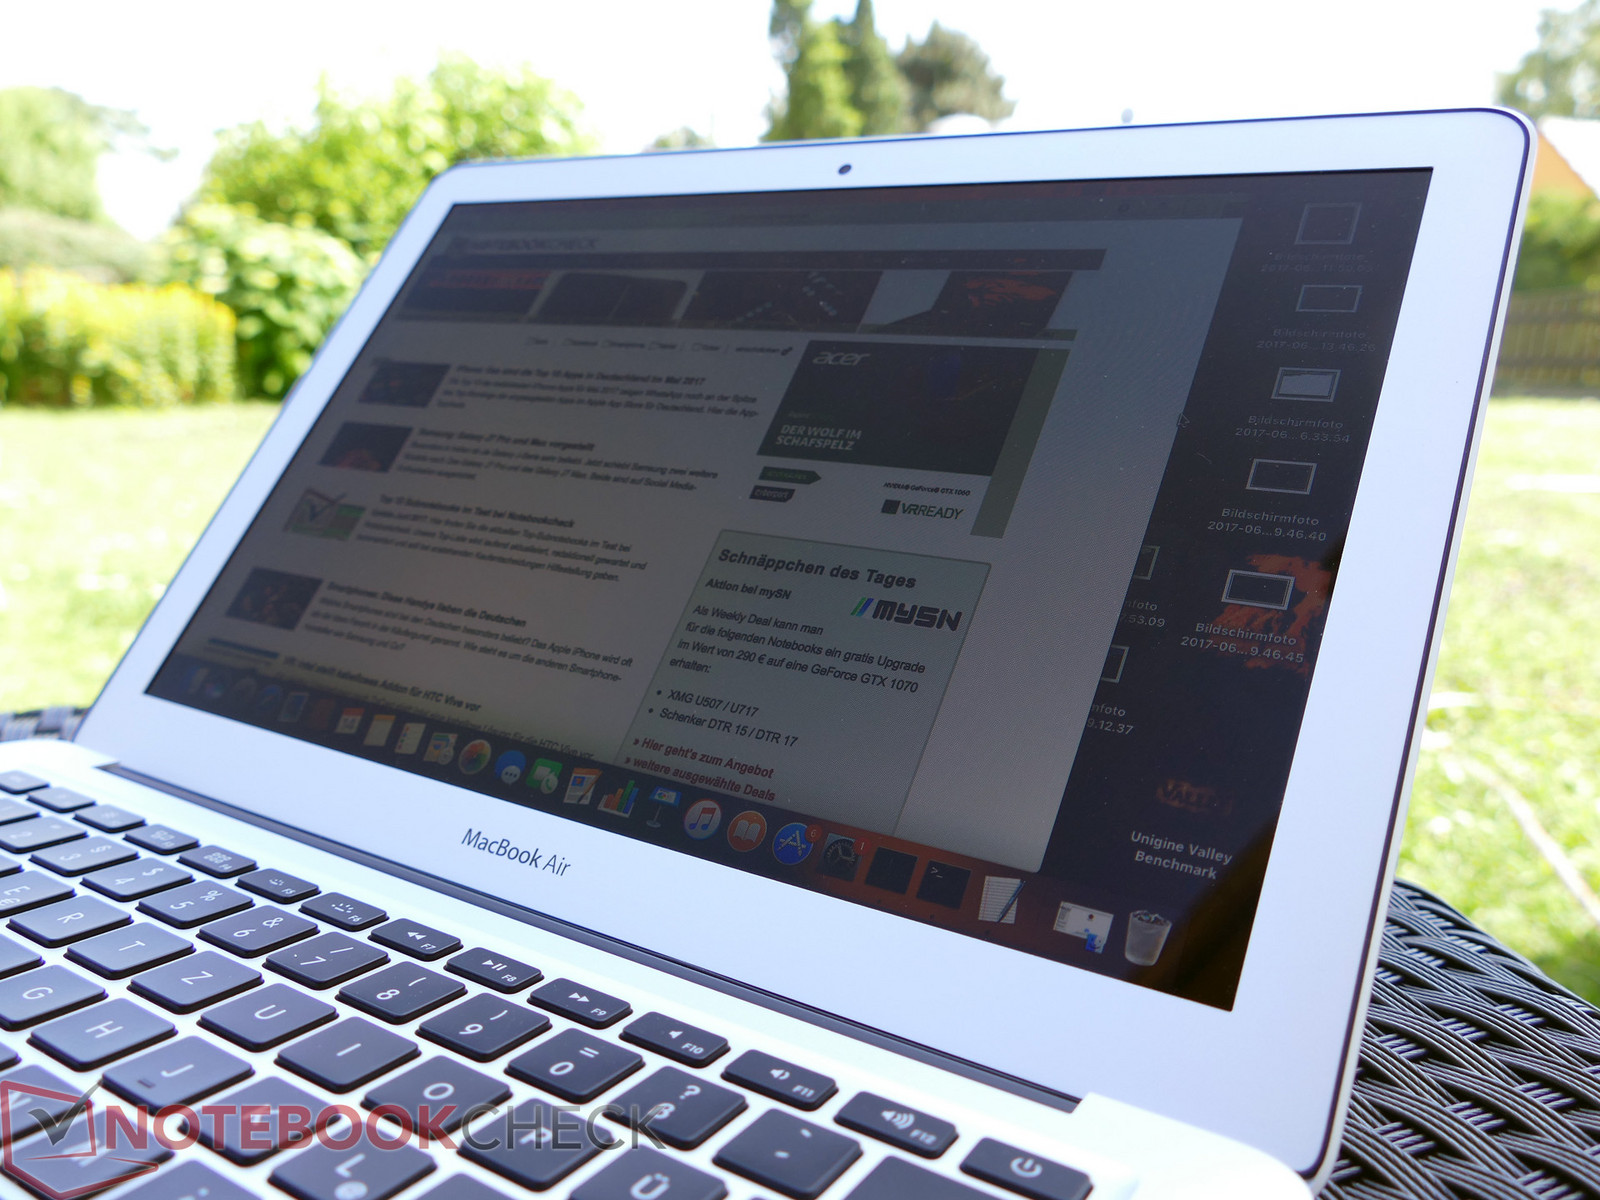 Apple Macbook Air 13 17 Laptop 1 8 Ghz Review Notebookcheck Net Reviews